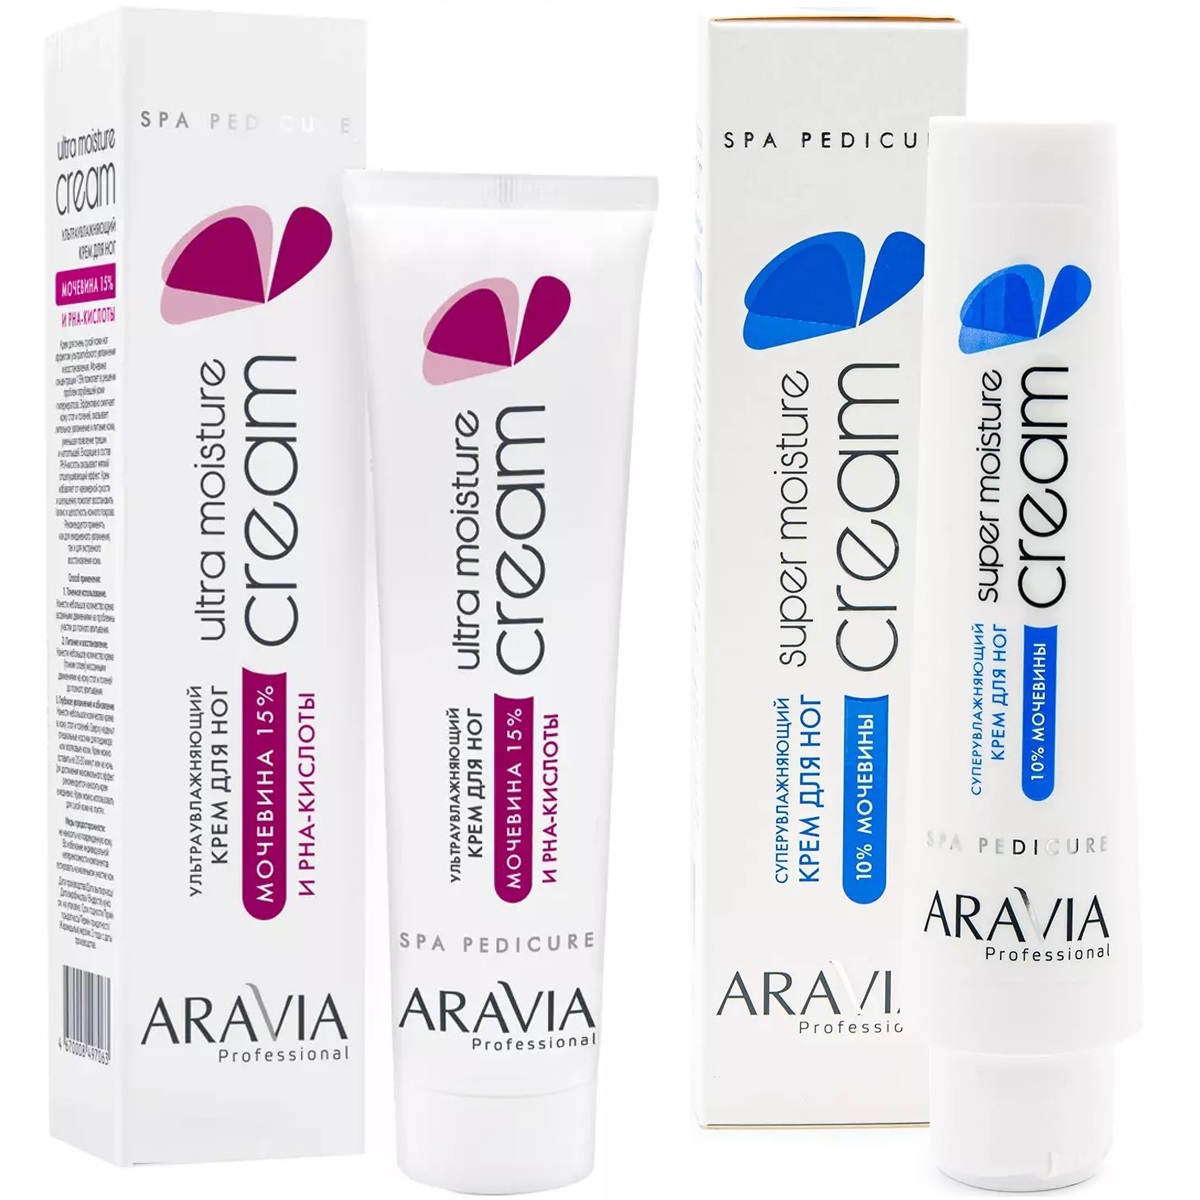 Aravia Professional Набор для ухода за кожей ног: крем ультраувлажняющий, 100 мл + суперувлажняющий крем, 100 мл (Aravia Professional, SPA педикюр) цена и фото